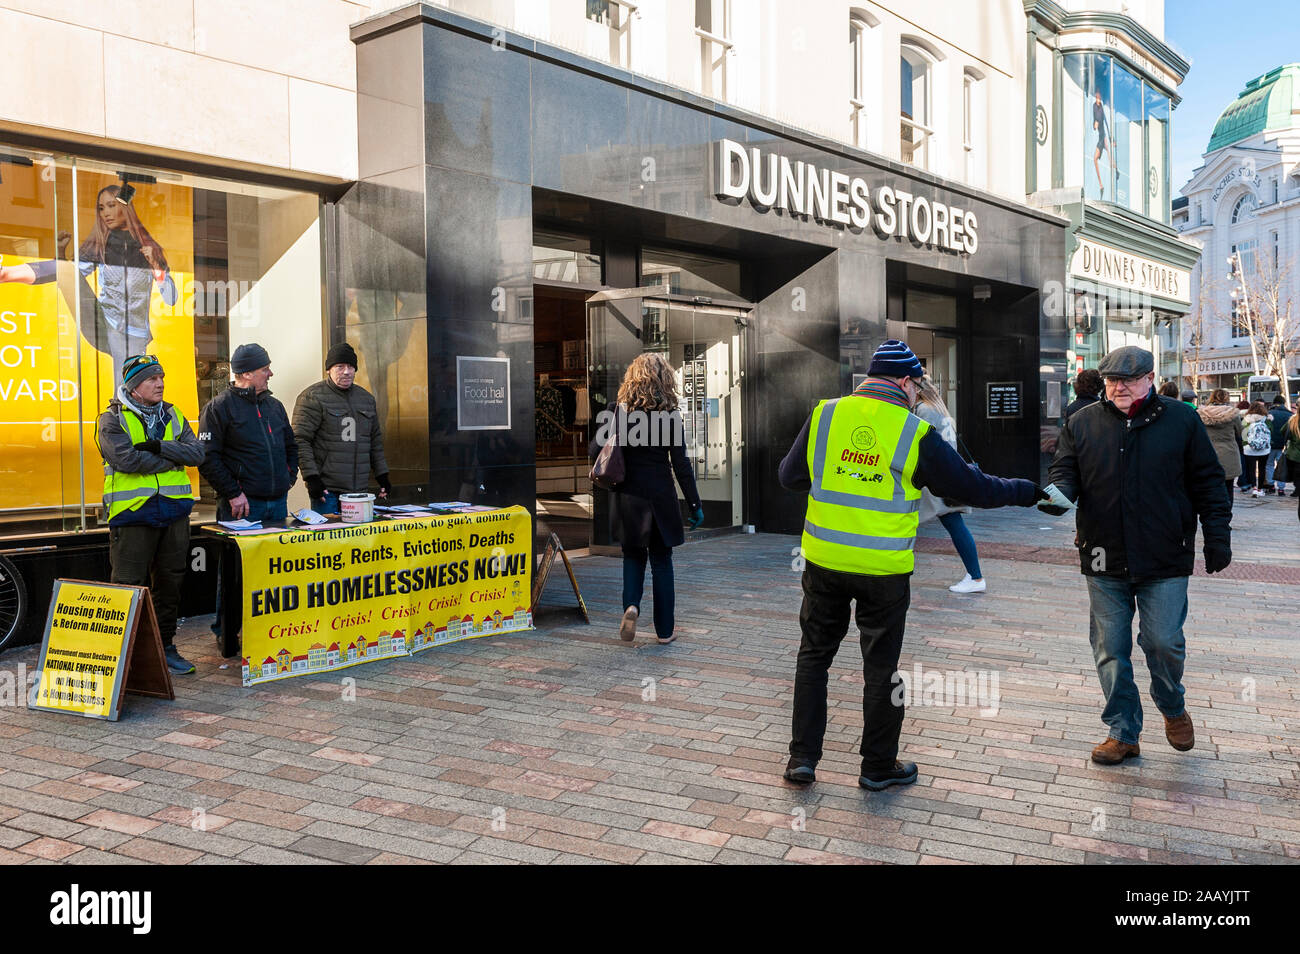 La gente repartir folletos sobre la carencia de hogar en Patrick Street, centro de la ciudad de Cork, Irlanda. Foto de stock